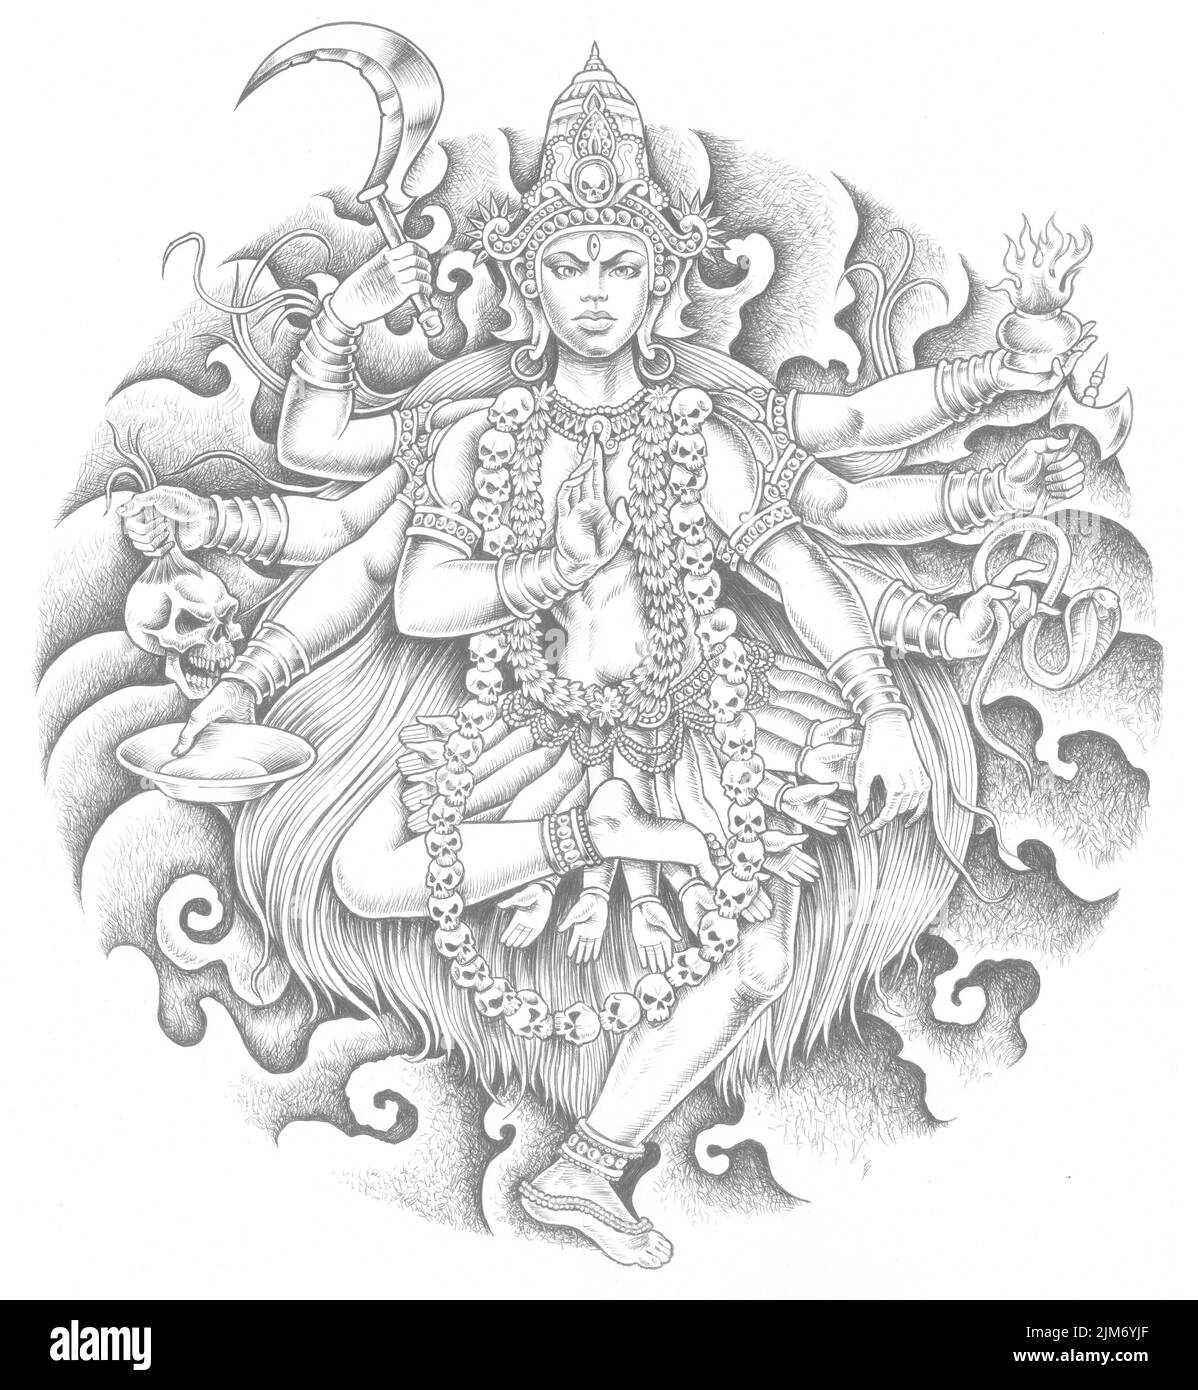 100+ Lord shiva tattoo designs | Shiva tattoo design, Shiva tattoo, Buddha  tattoo design